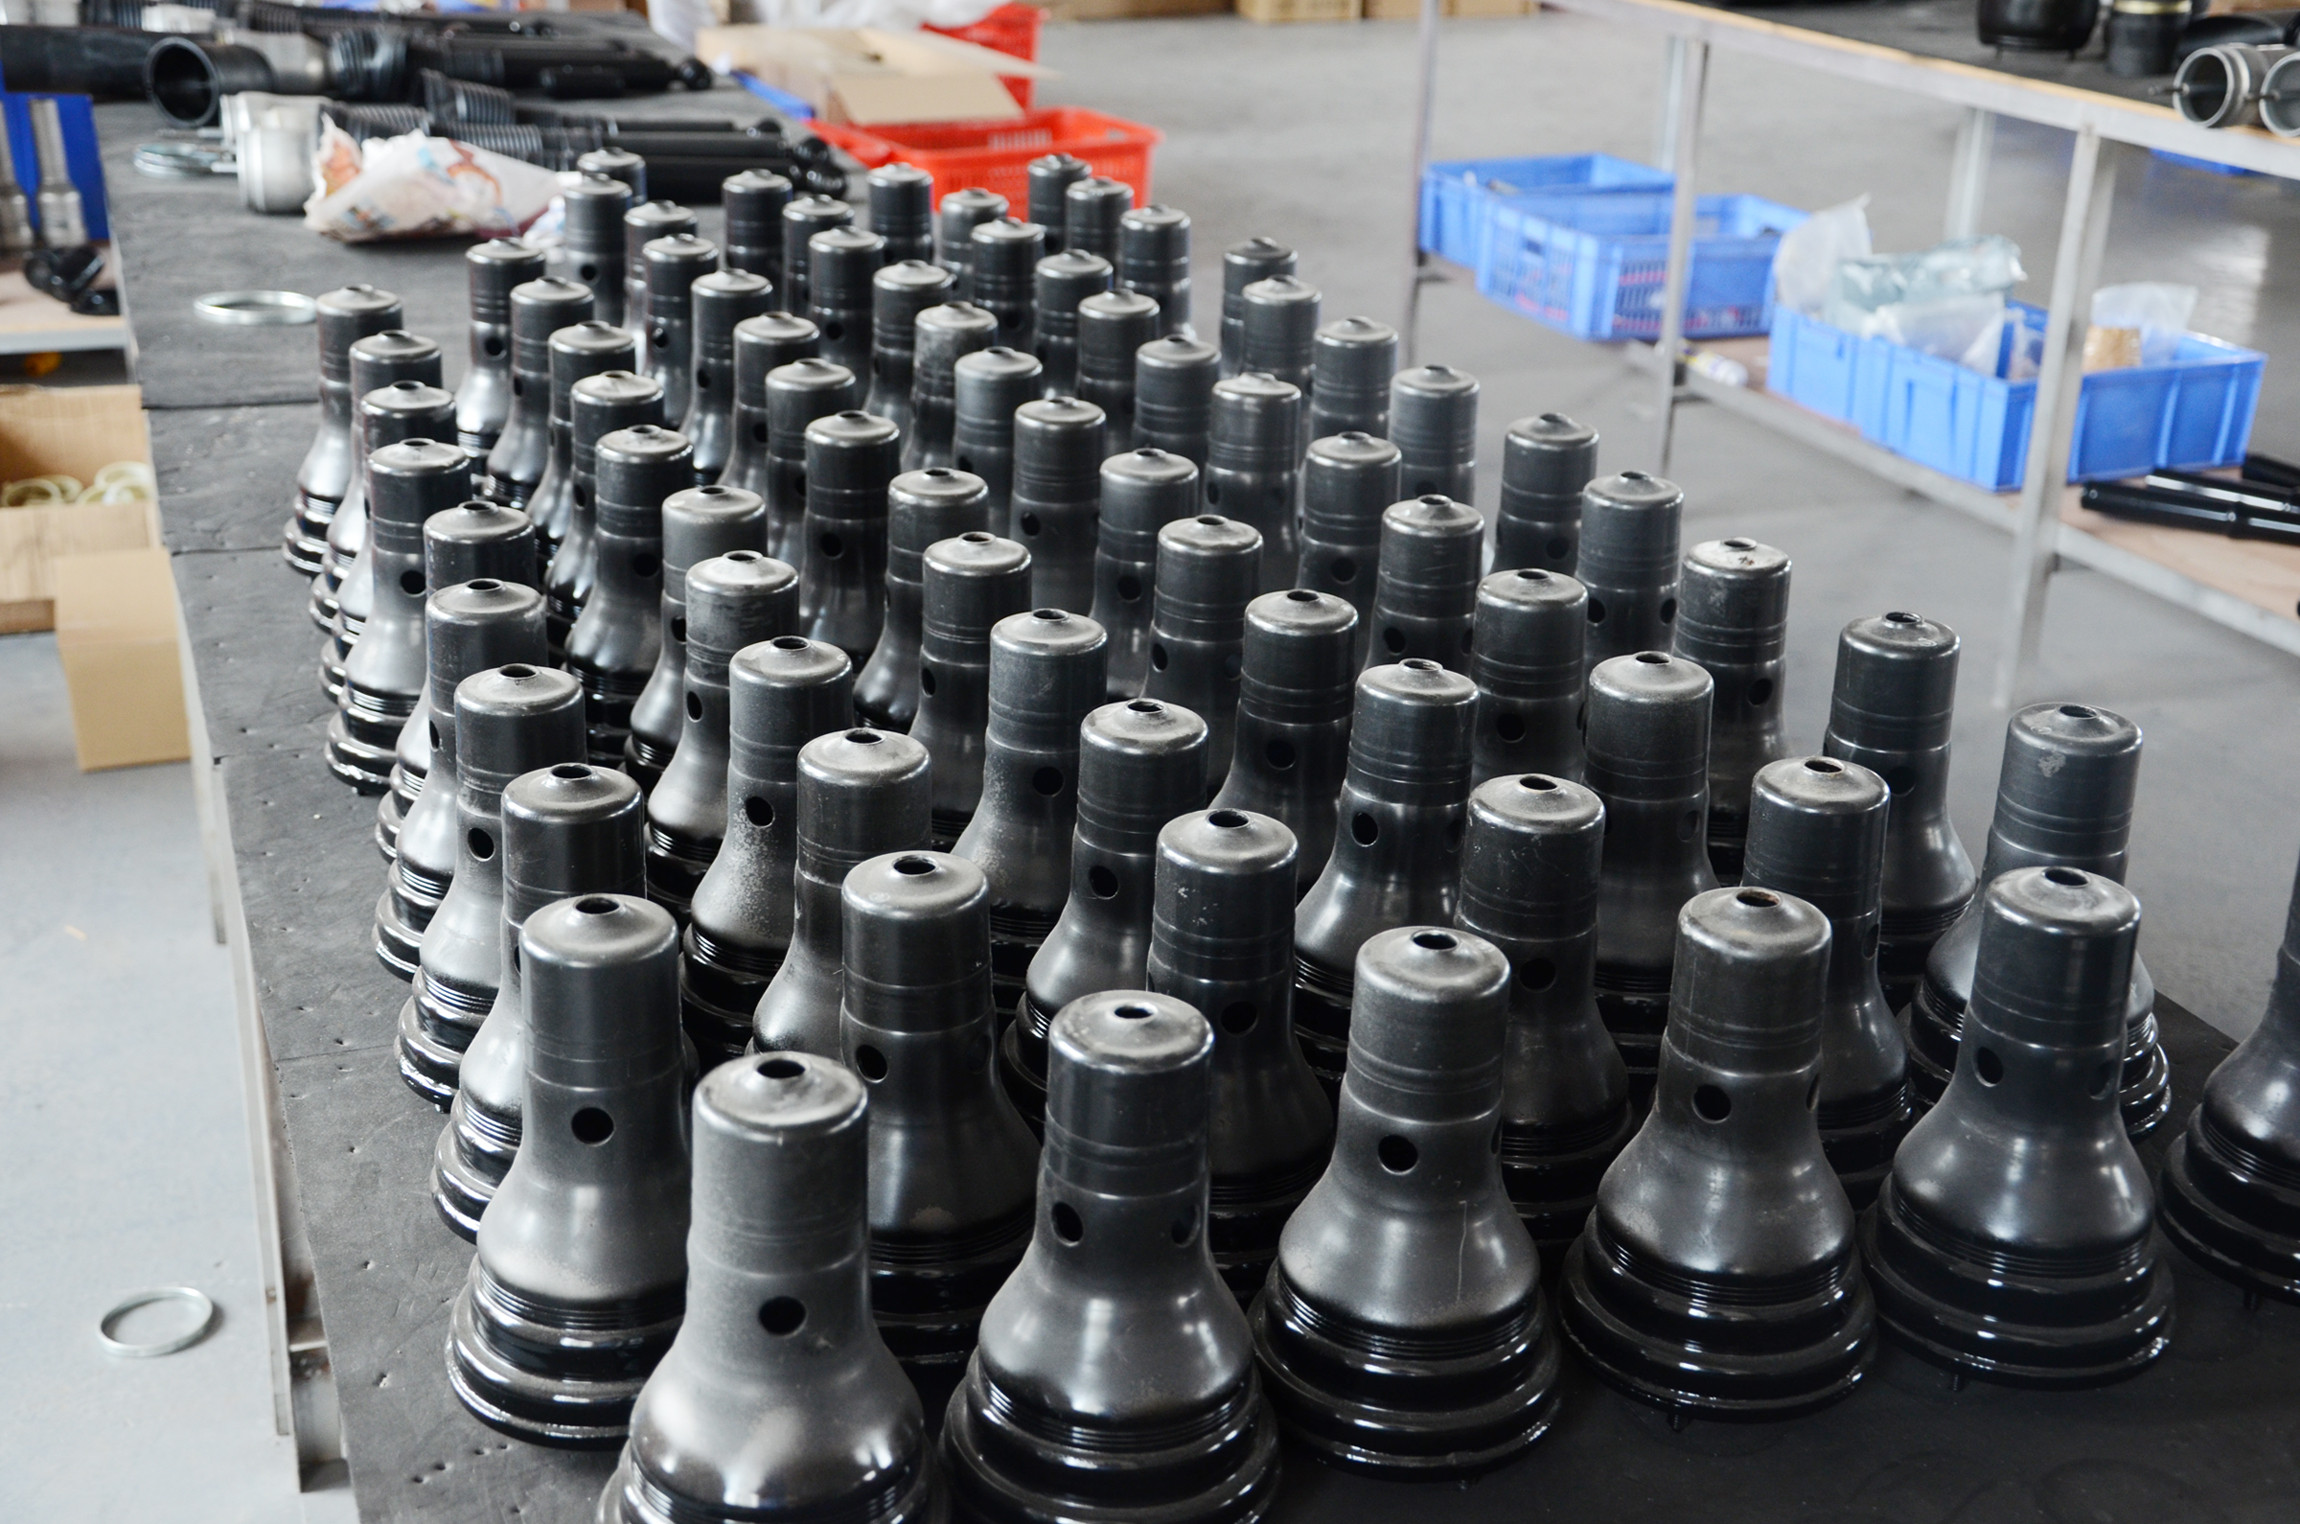 Guangzhou Tech master auto parts co.ltd factory production line